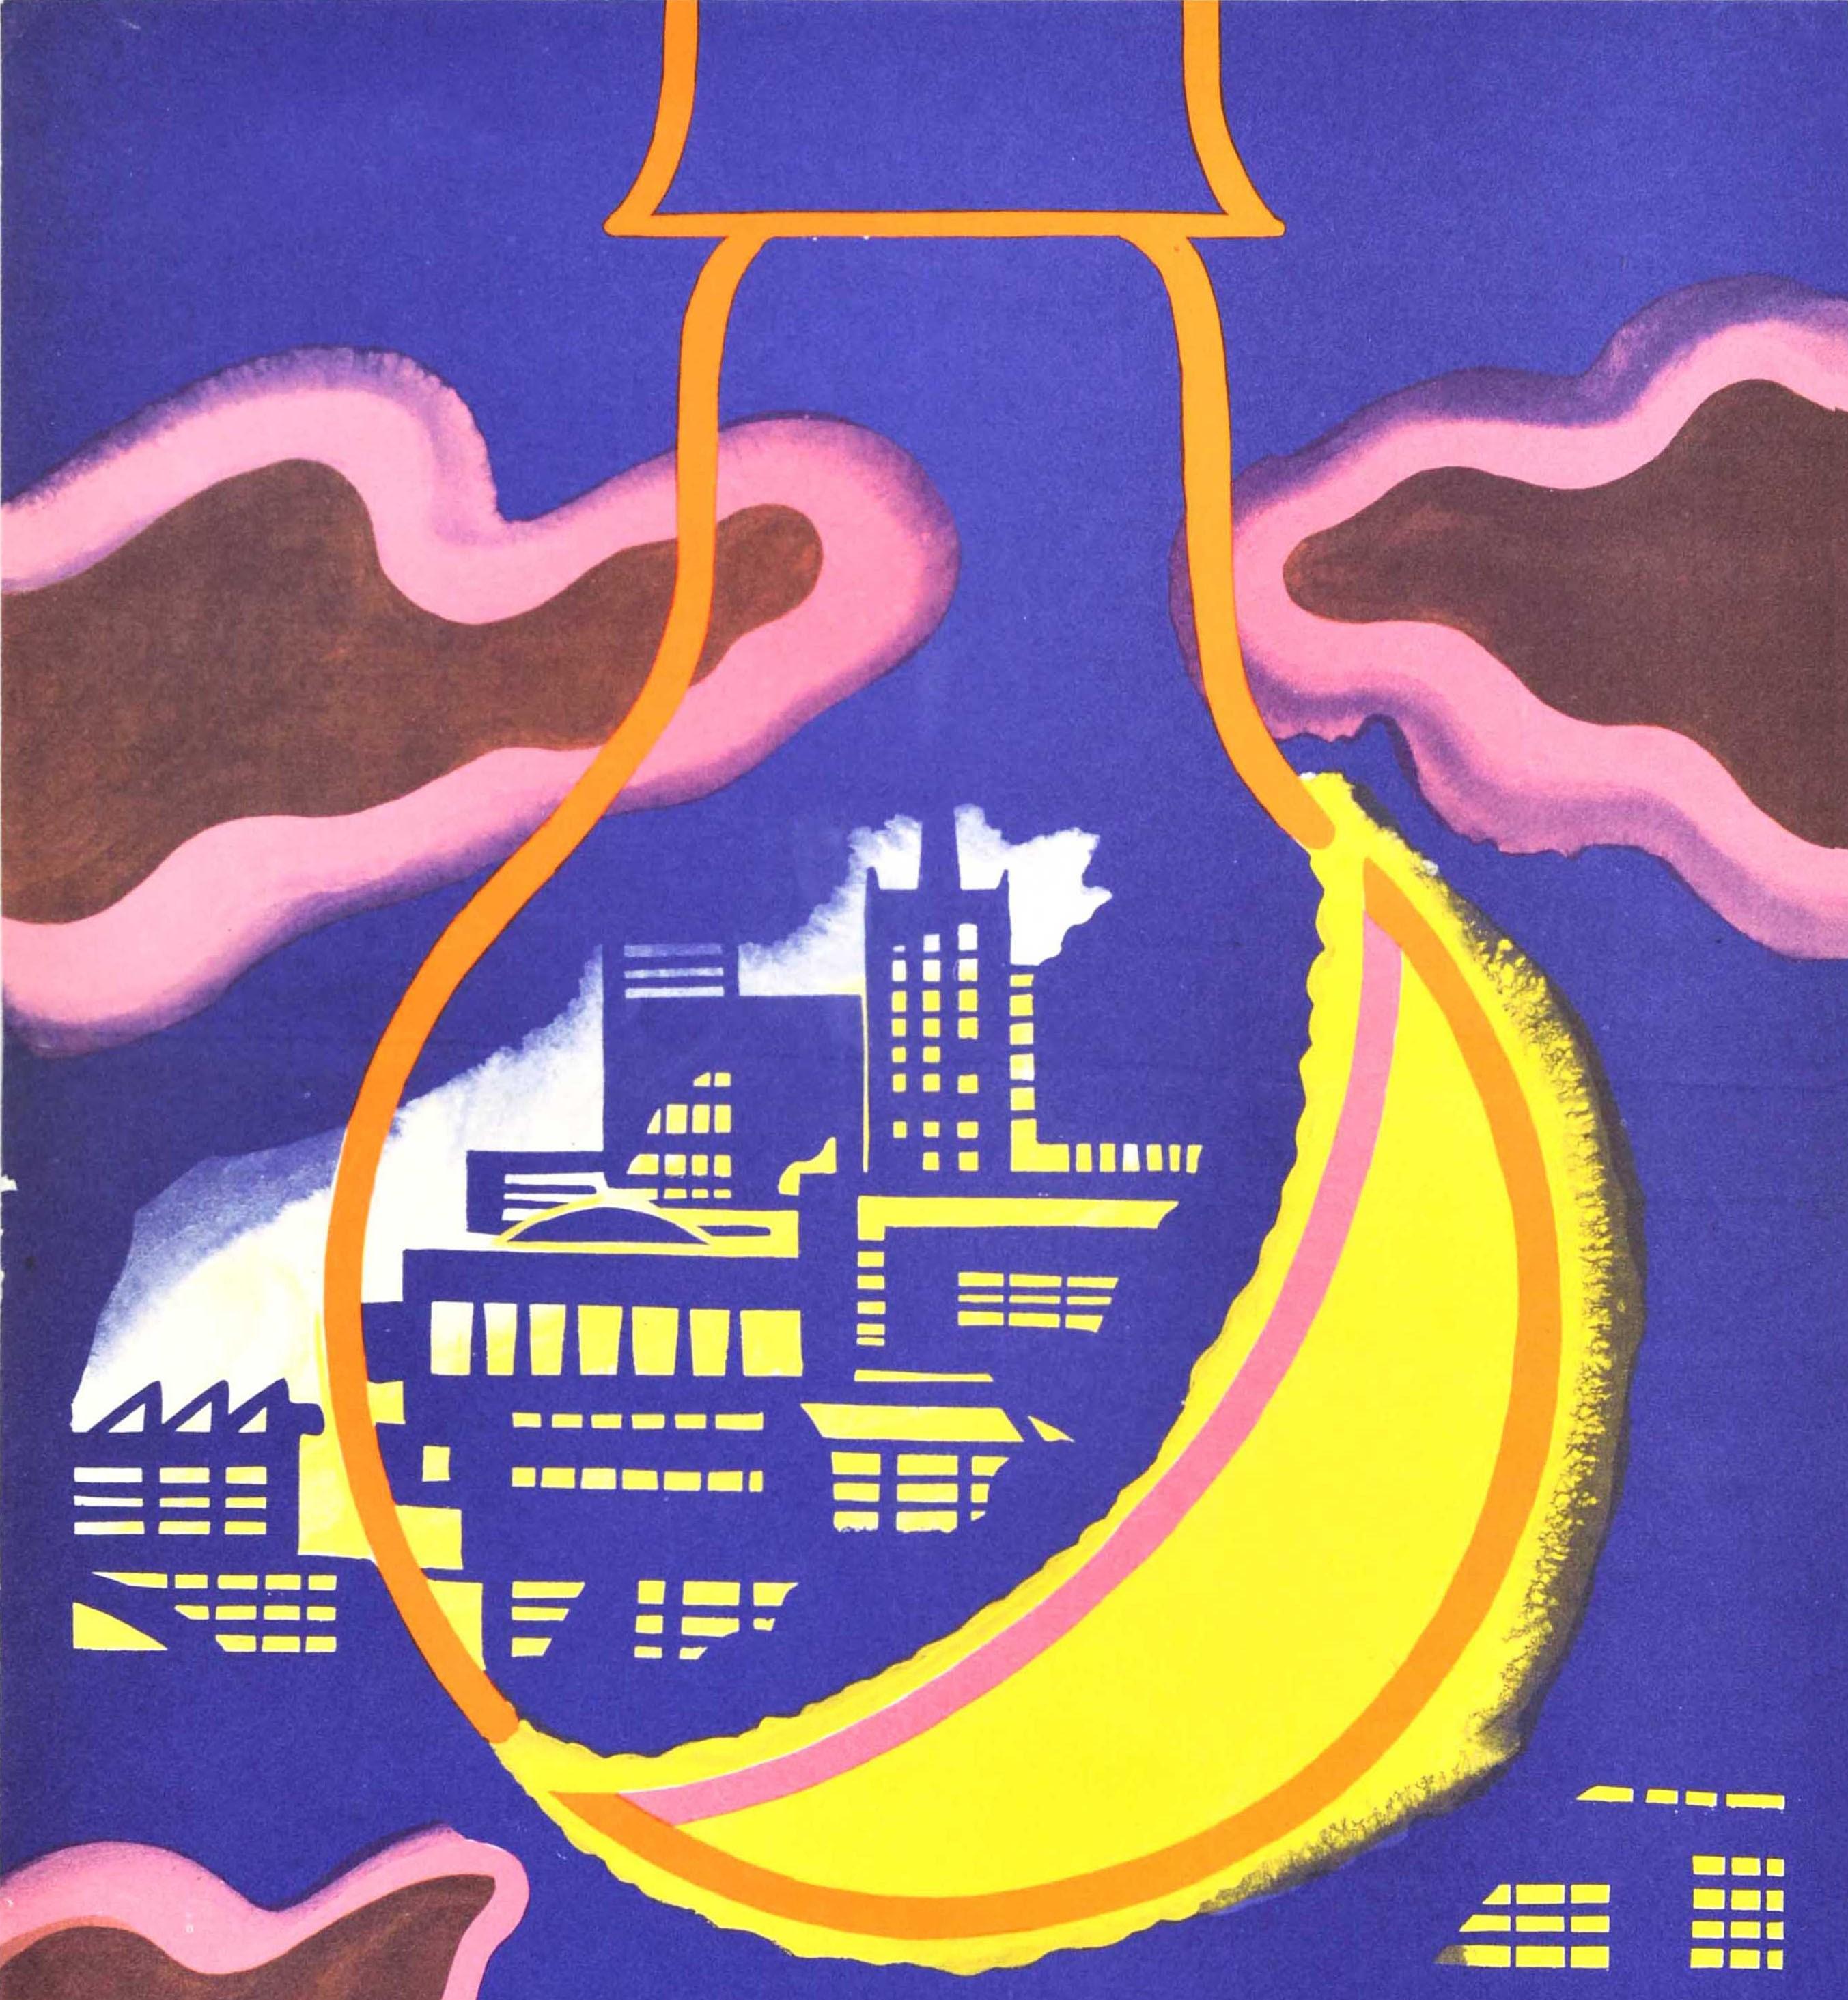 saving energy poster